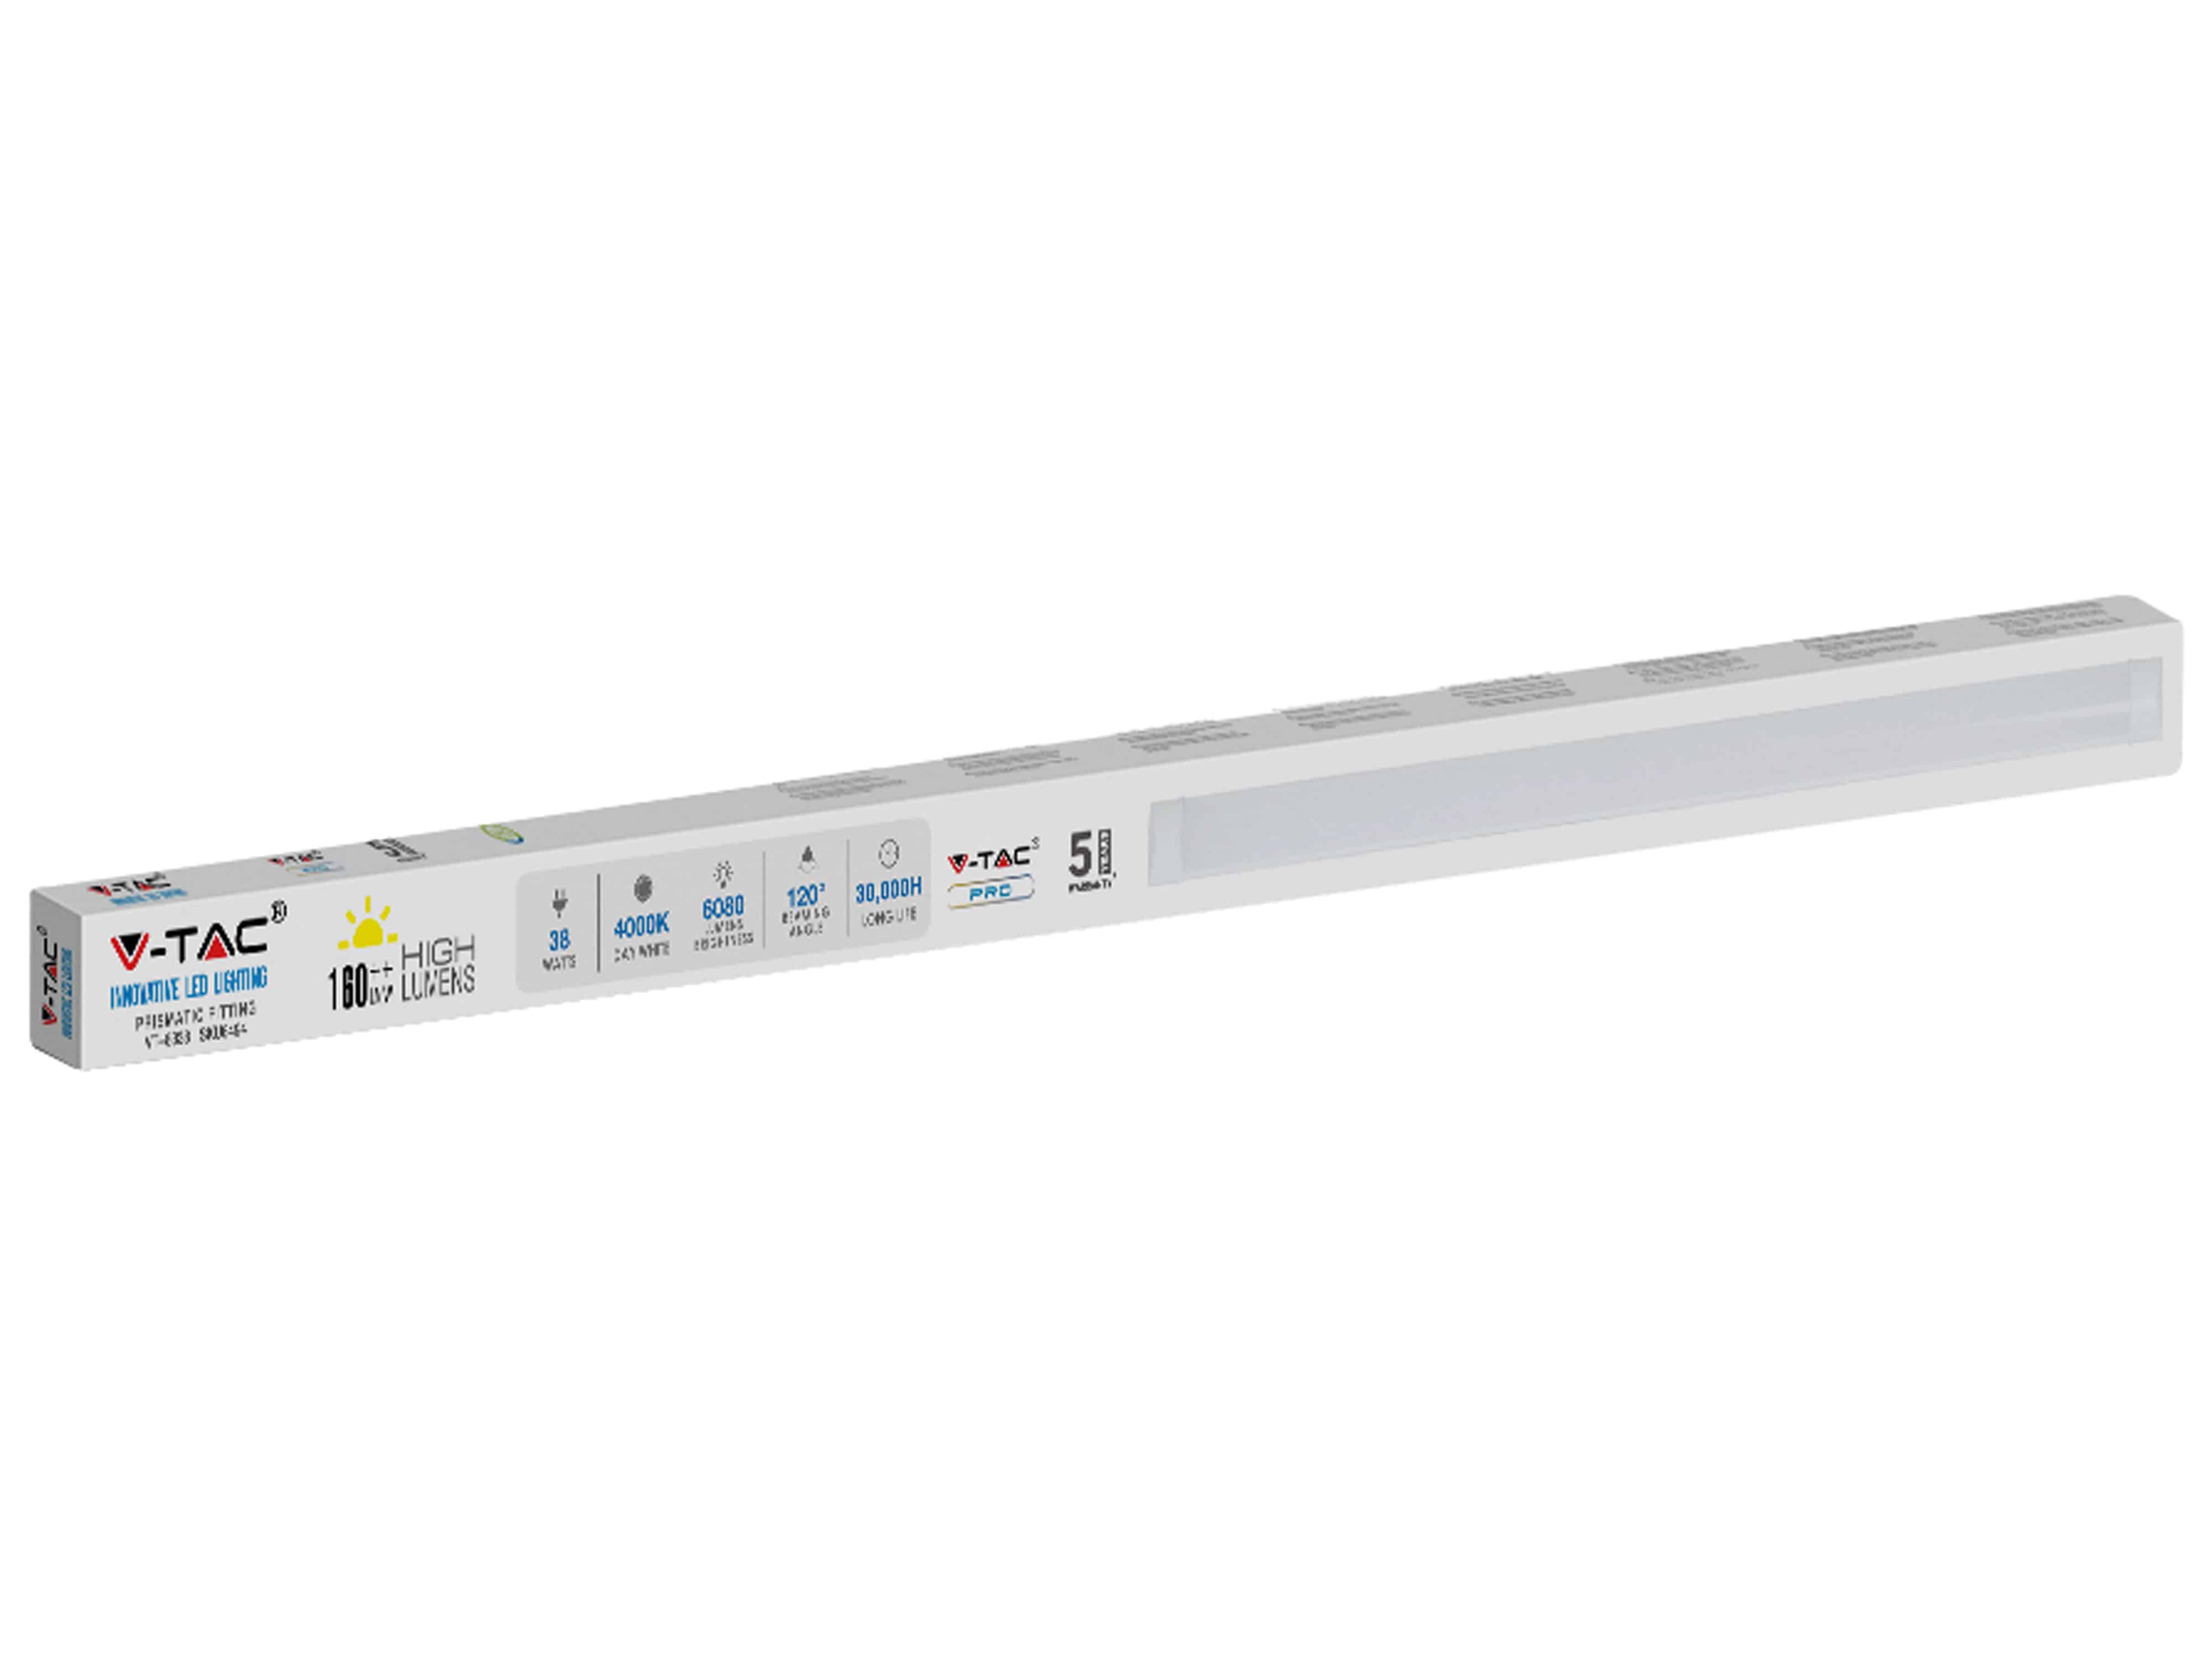 V-TAC LED-Deckenleuchte, 8338 (6494) EEK: D 38 W, 5900 lm, 4000 K, 1500 mm